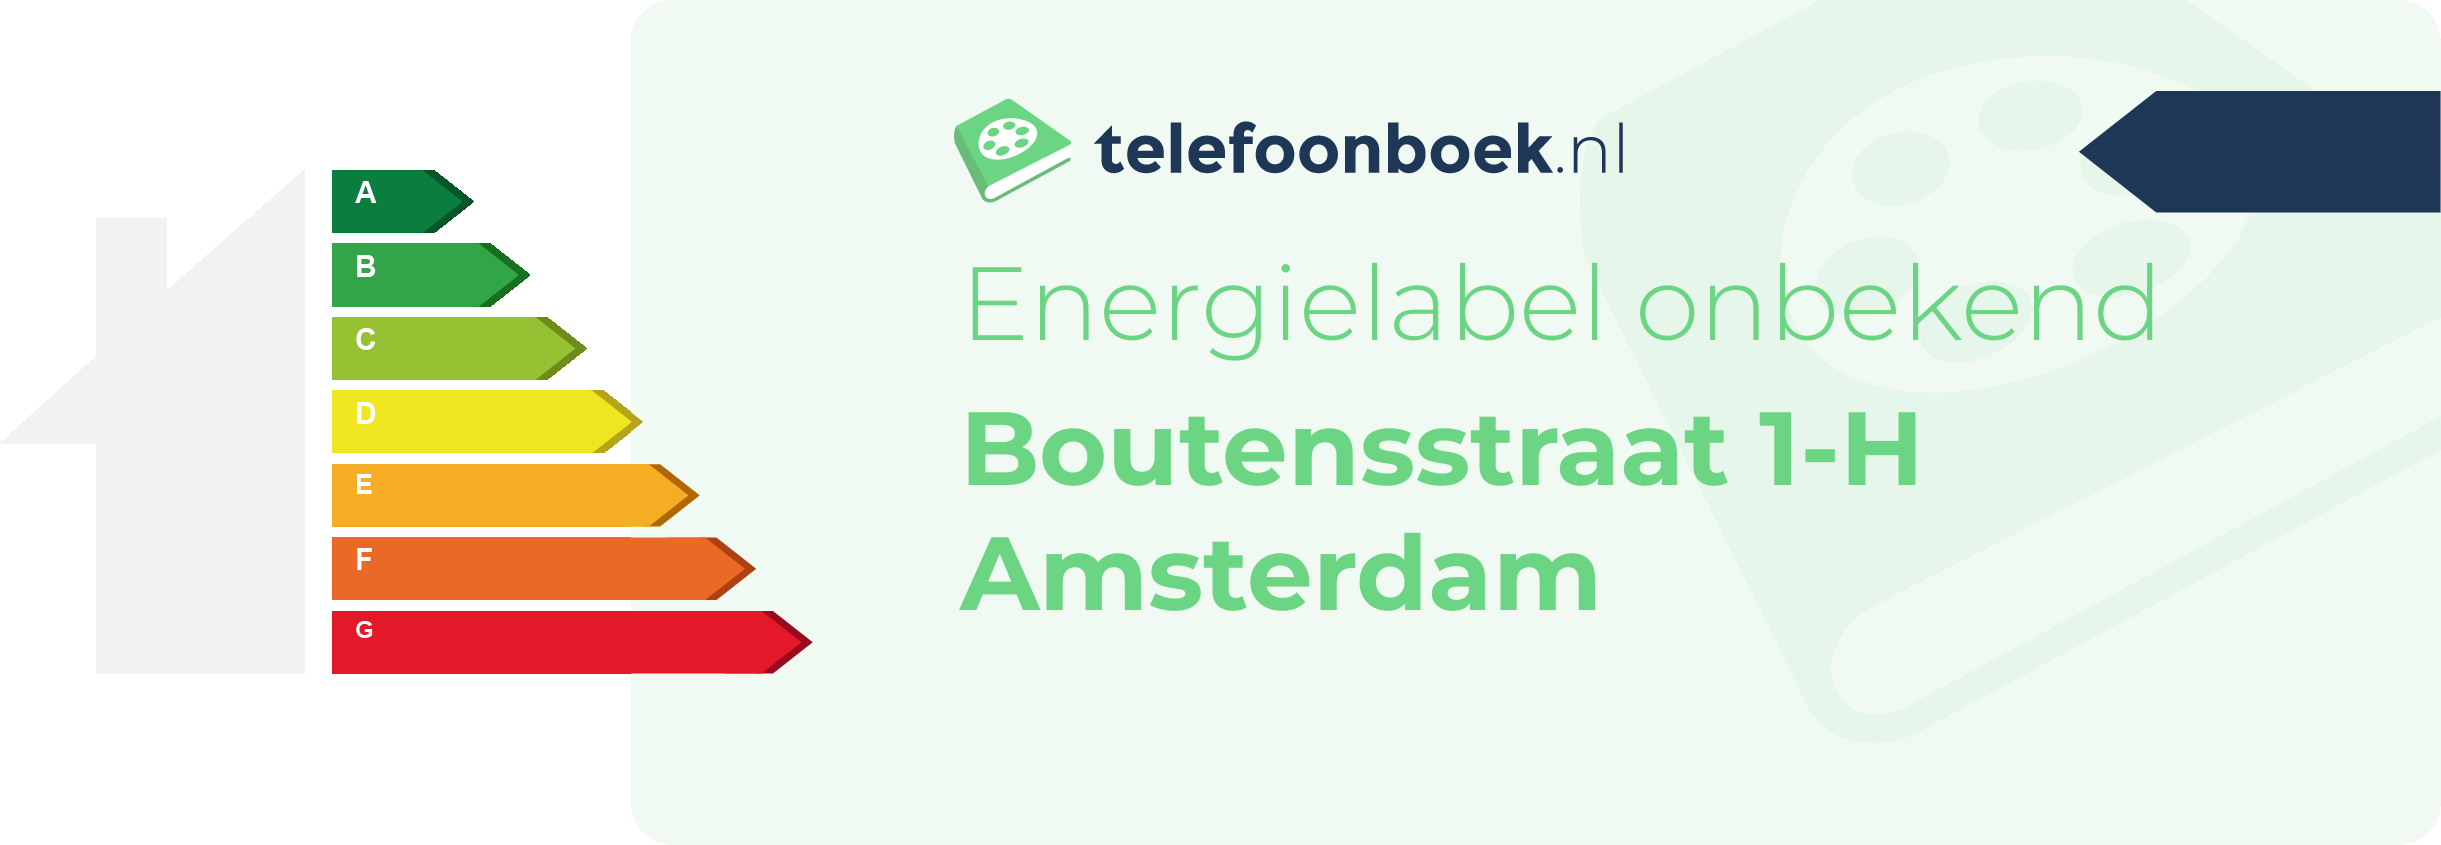 Energielabel Boutensstraat 1-H Amsterdam